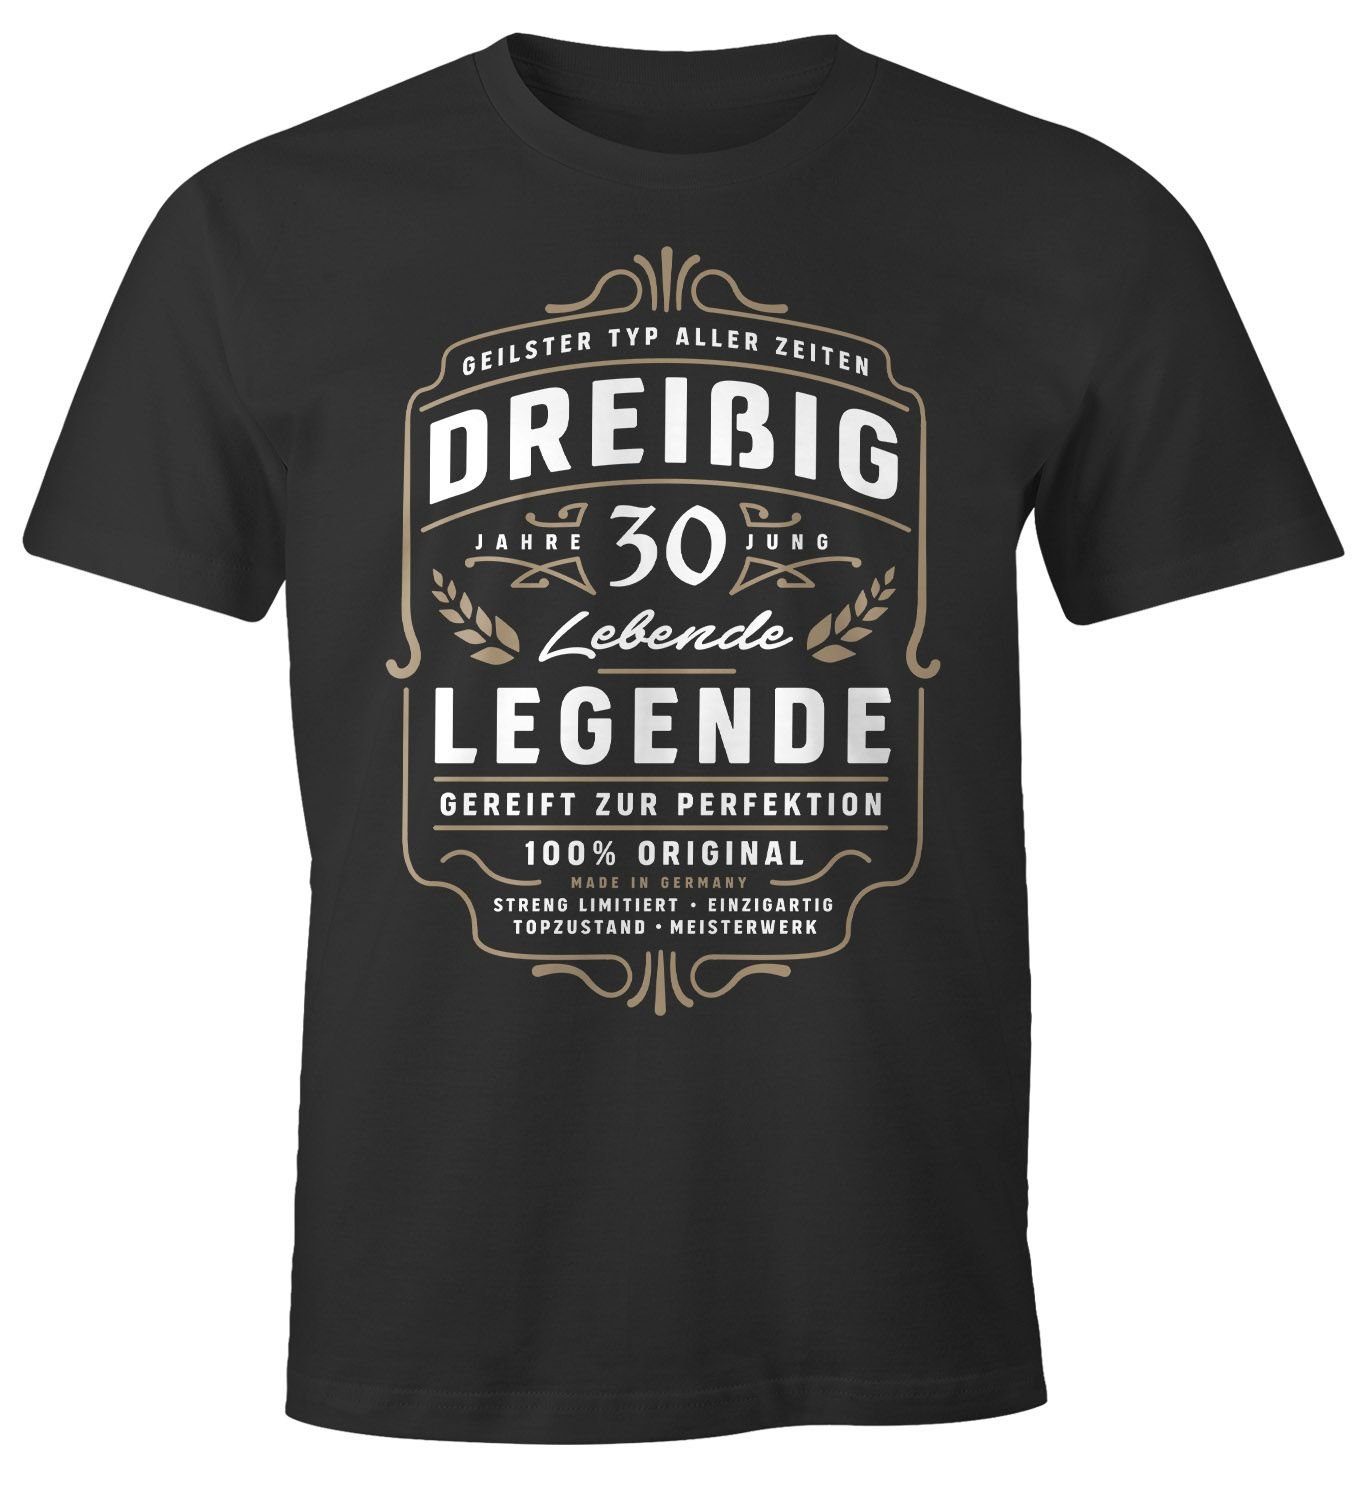 Legende Print T-Shirt 90 Herren Männer MoonWorks® Lebende MoonWorks für Dreißig Geschenk schwarz mit - Geburtstag 18 Alter Print-Shirt